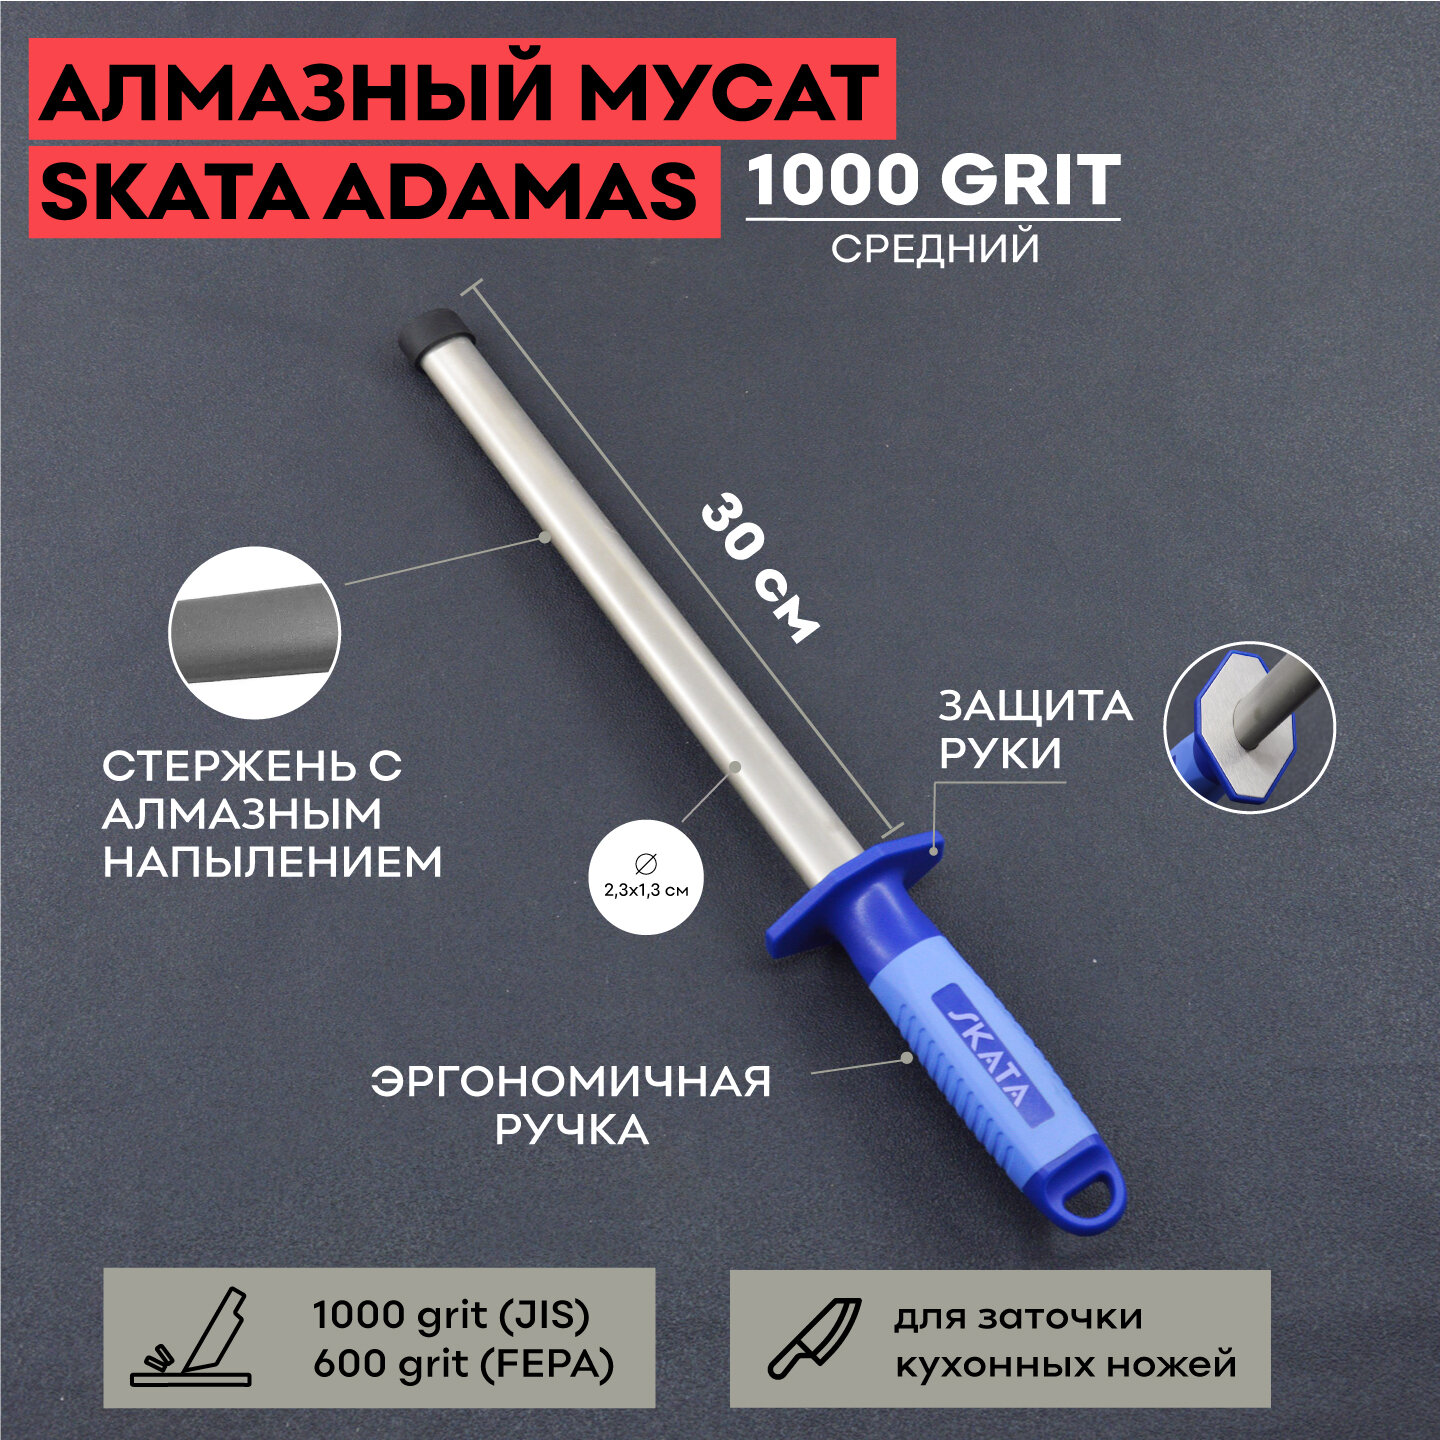 Мусат алмазный 30 cм SKATA ADAMAS / овальный / для заточки / для правки кухонных ножей / 1000 grit